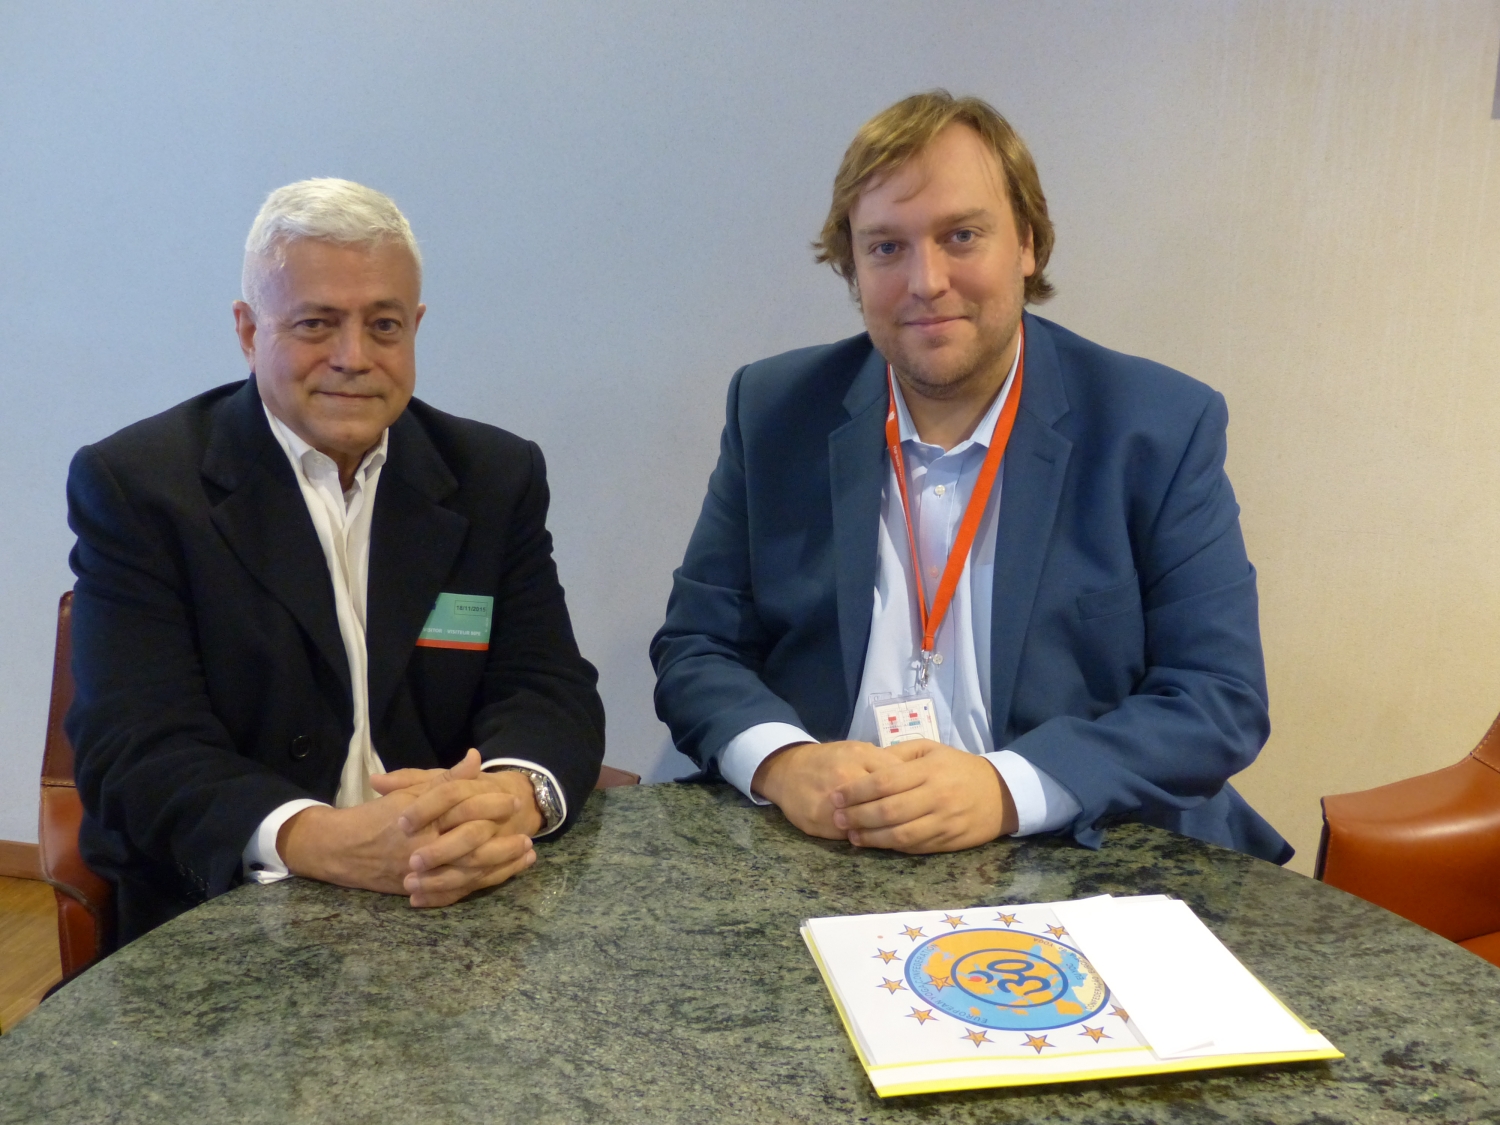 Com Dr. Pedro Santo, acessor do Eurodeputado Dr. Francisco Assis